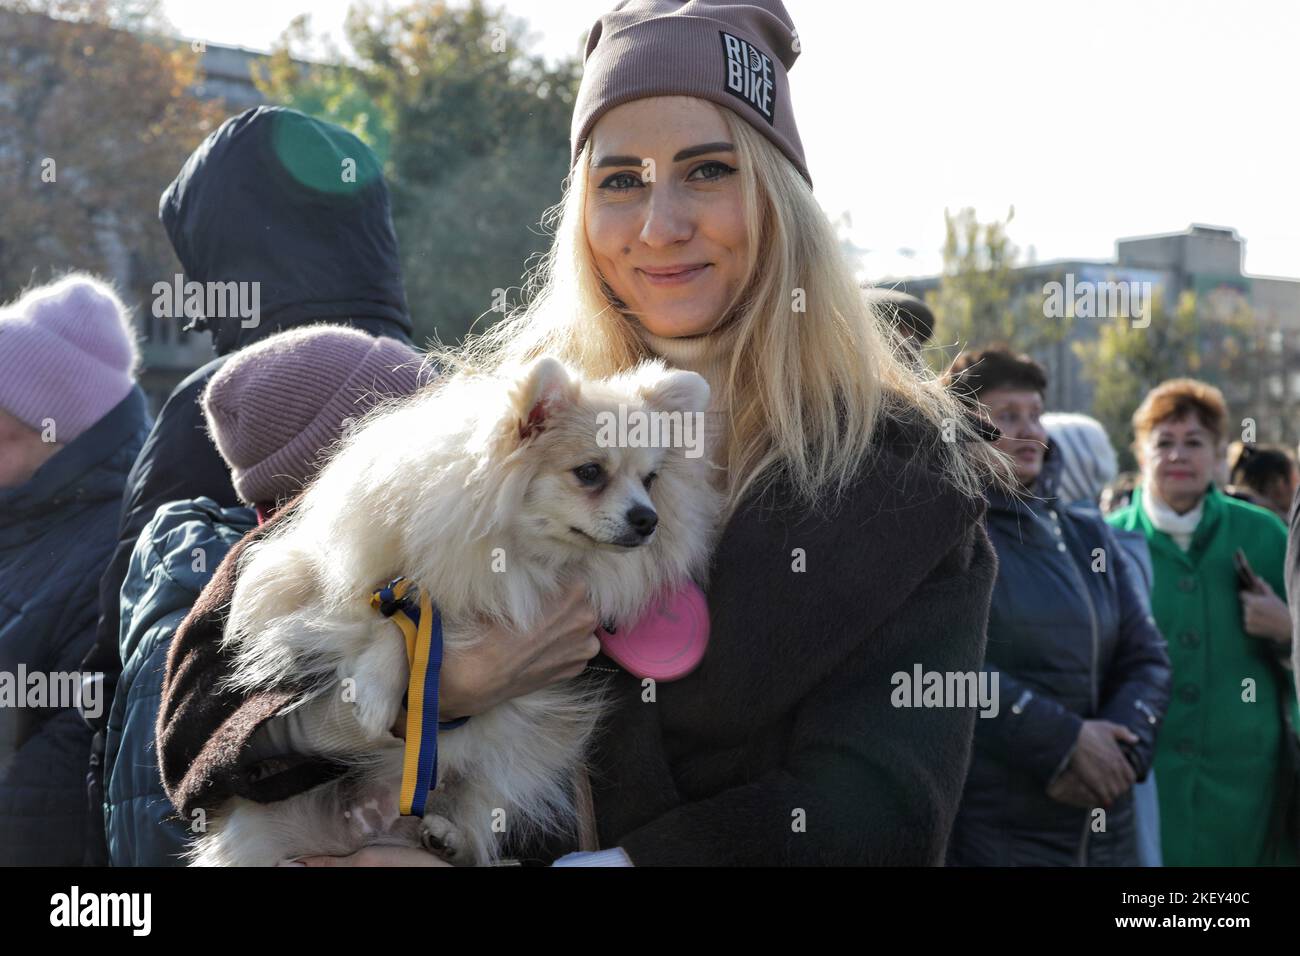 Non exclusif: KHERSON, UKRAINE - 14 NOVEMBRE 2022 - Une femme tient un chien avec un ruban aux couleurs nationales ukrainiennes dans le quartier central de Kherson Banque D'Images